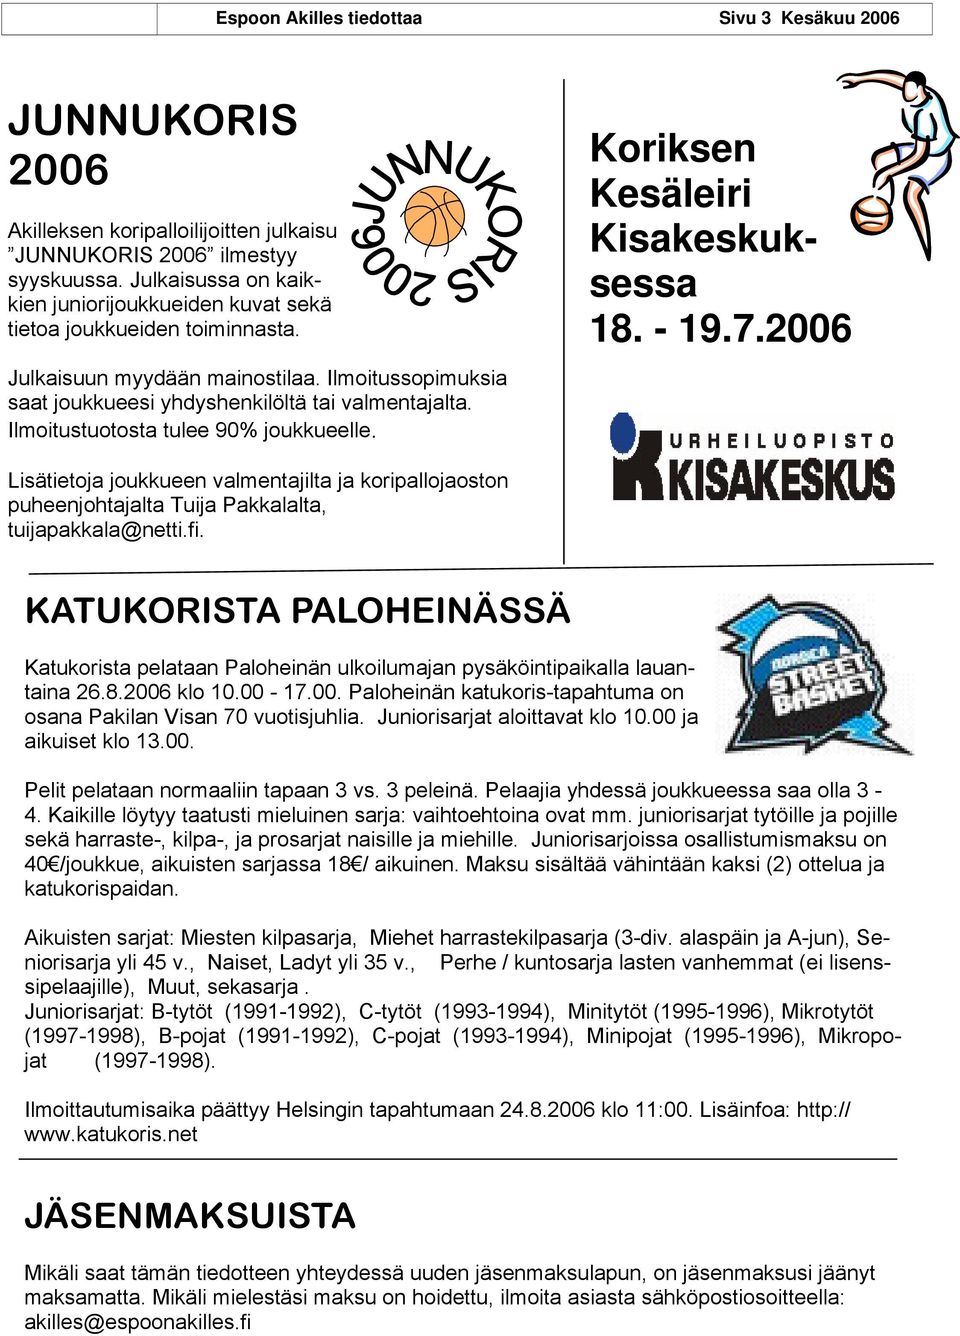 Ilmoitustuotosta tulee 90% joukkueelle. Koriksen Kesäleiri Kisakeskuksessa 18. - 19.7.